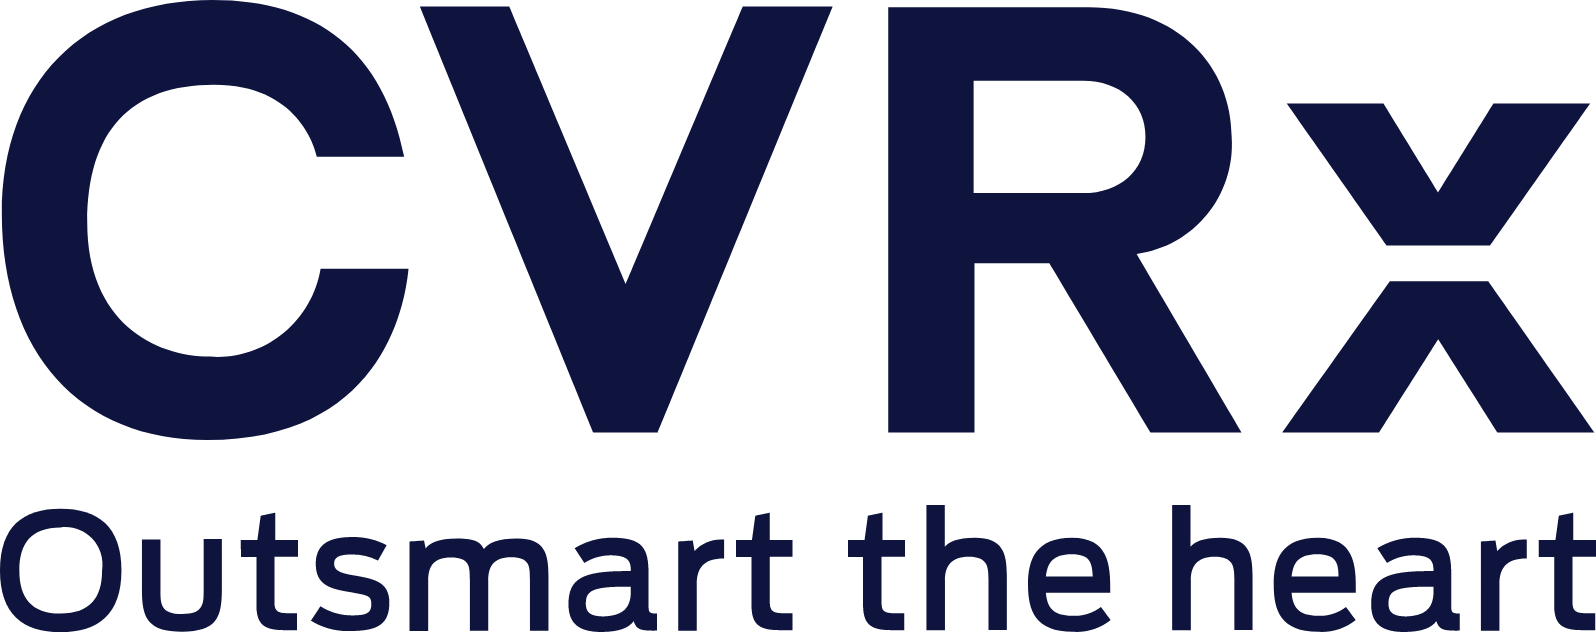 CVRx logo large (transparent PNG)